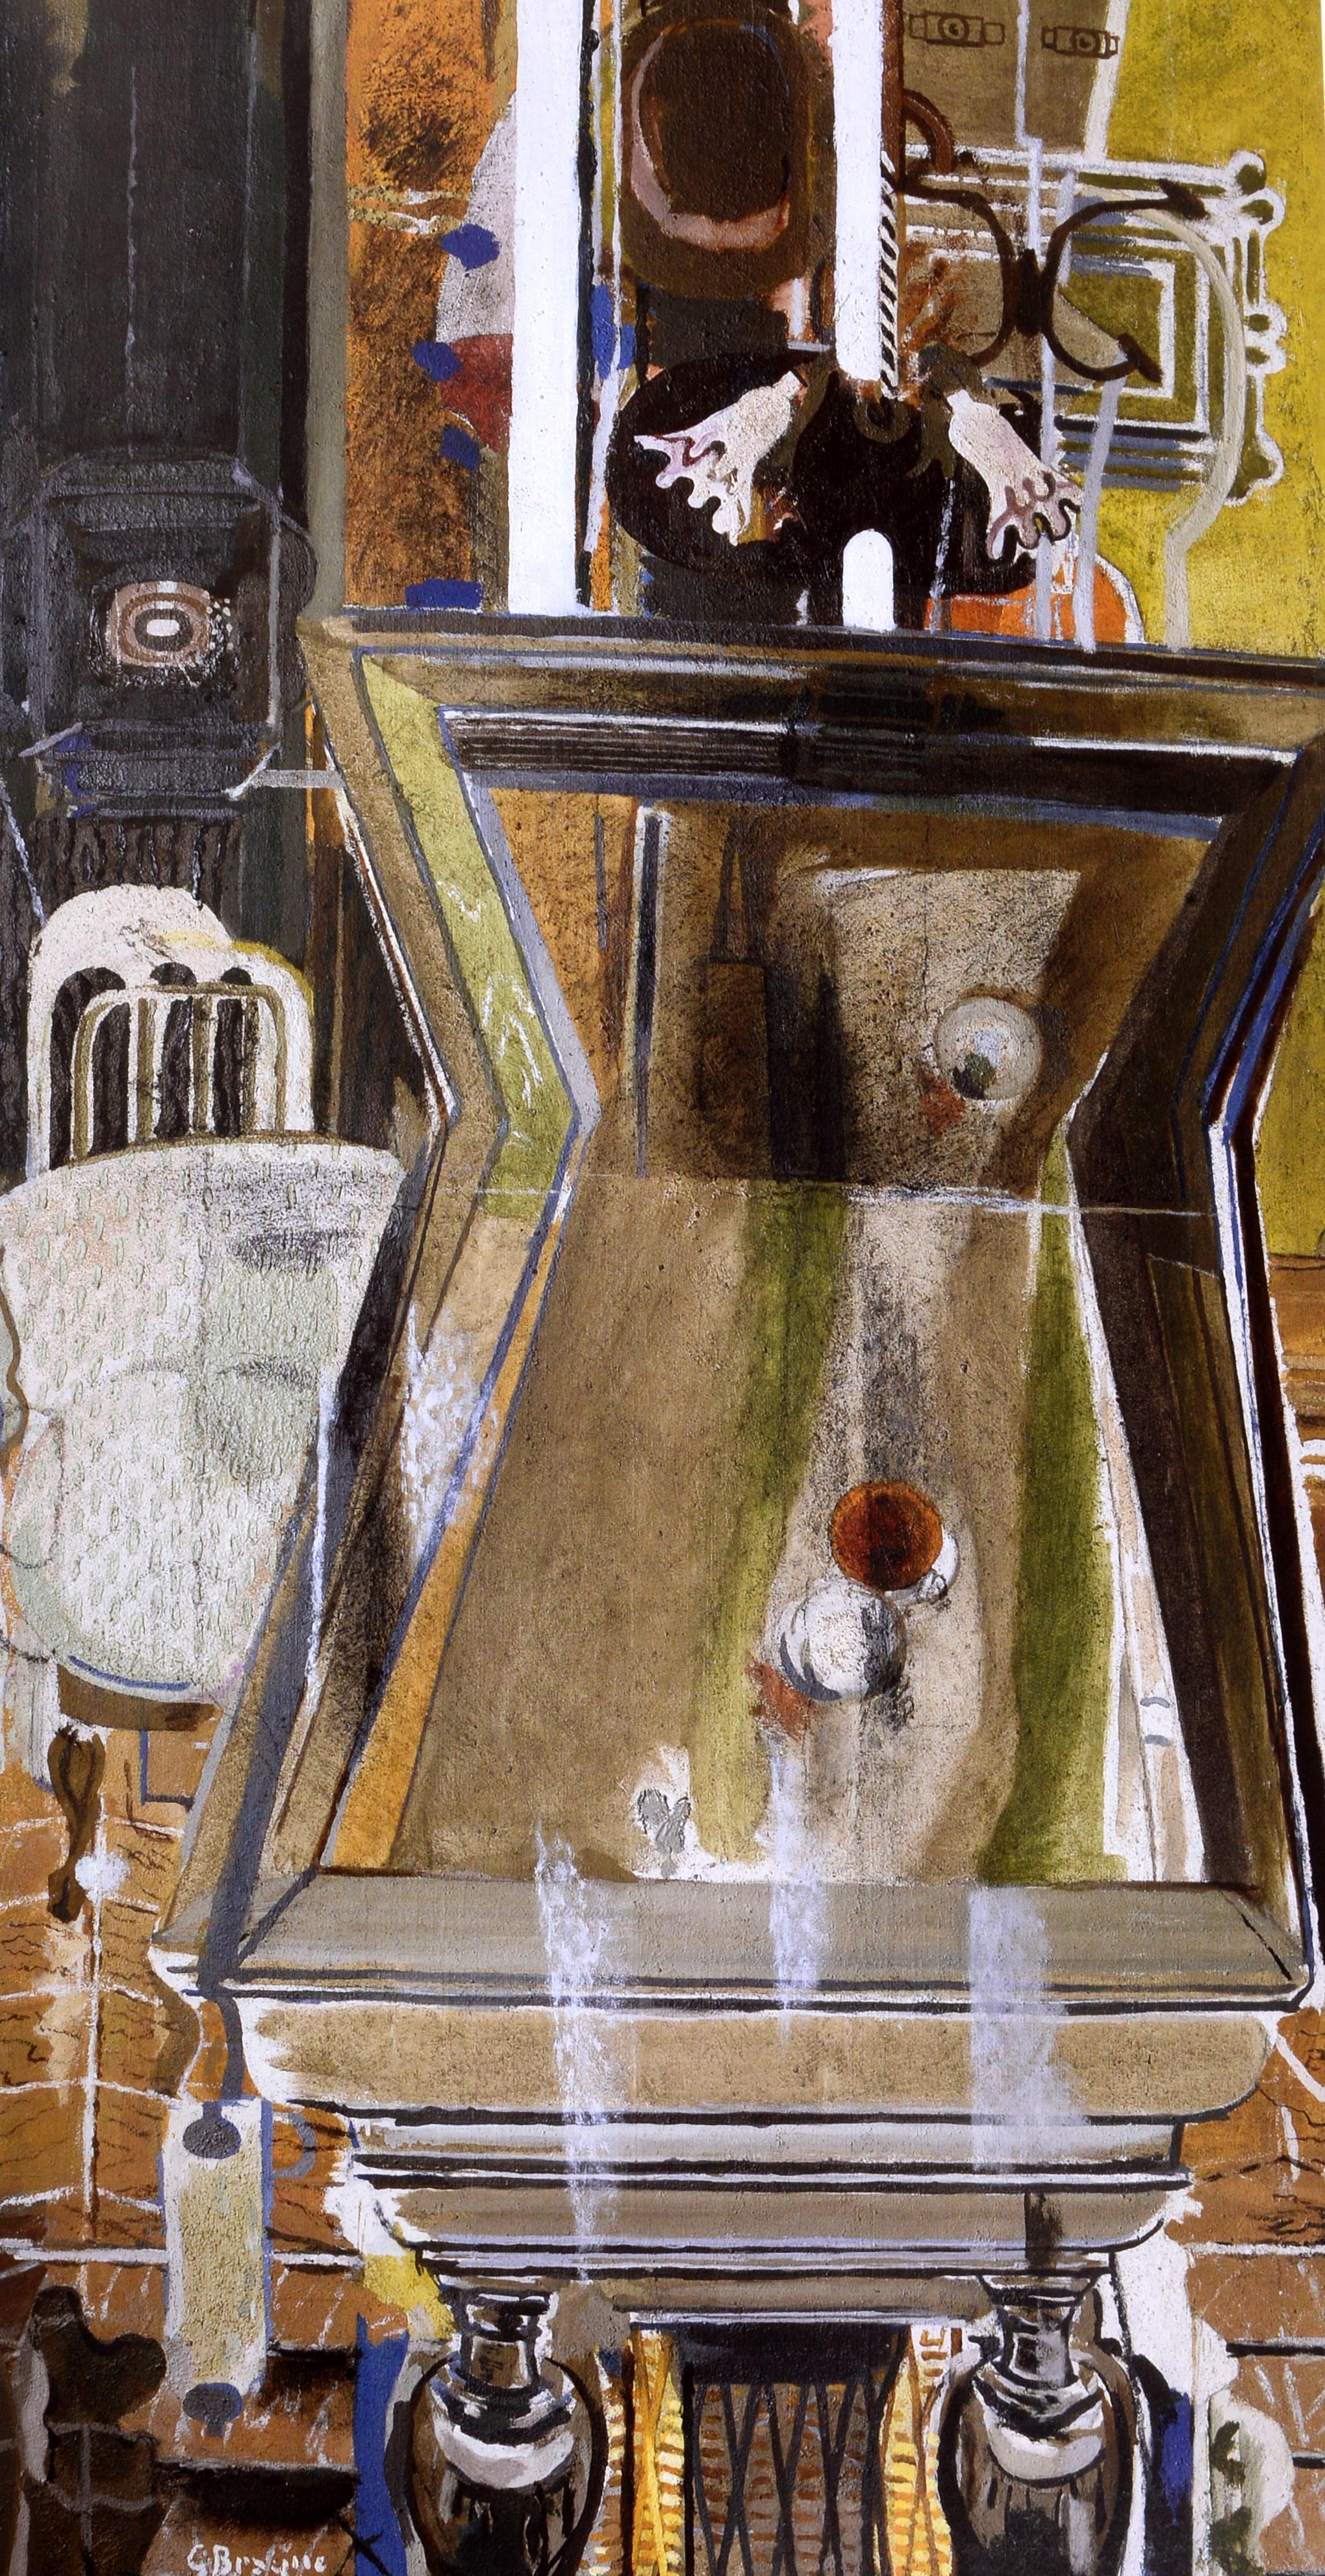 Georges Braque et la nature morte cubiste 1928-1945 par Karen K.K. Butler et Renée Maurer. Musée d'art Mildred Lane Kemper, 2013. Ce livre offre le premier regard détaillé sur les expériences de Braque en matière de natures mortes et d'intérieurs